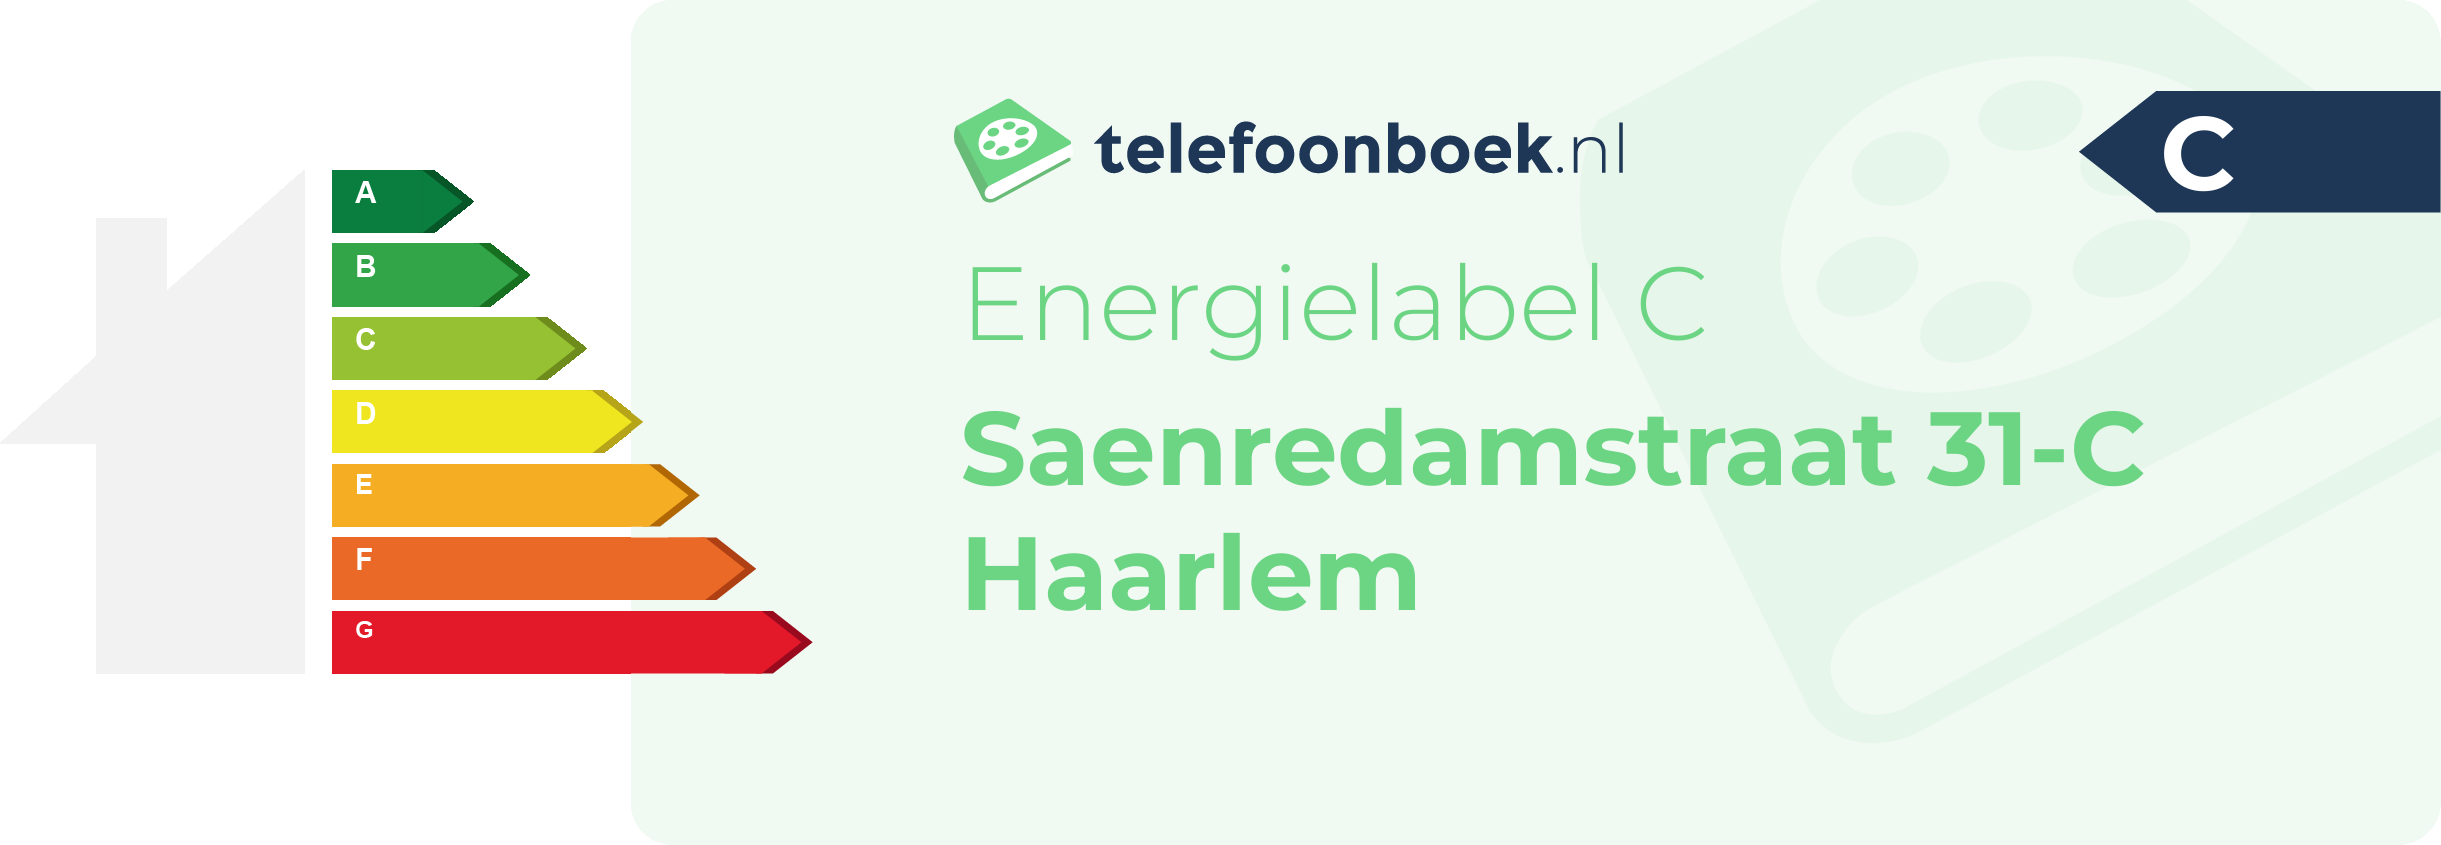 Energielabel Saenredamstraat 31-C Haarlem